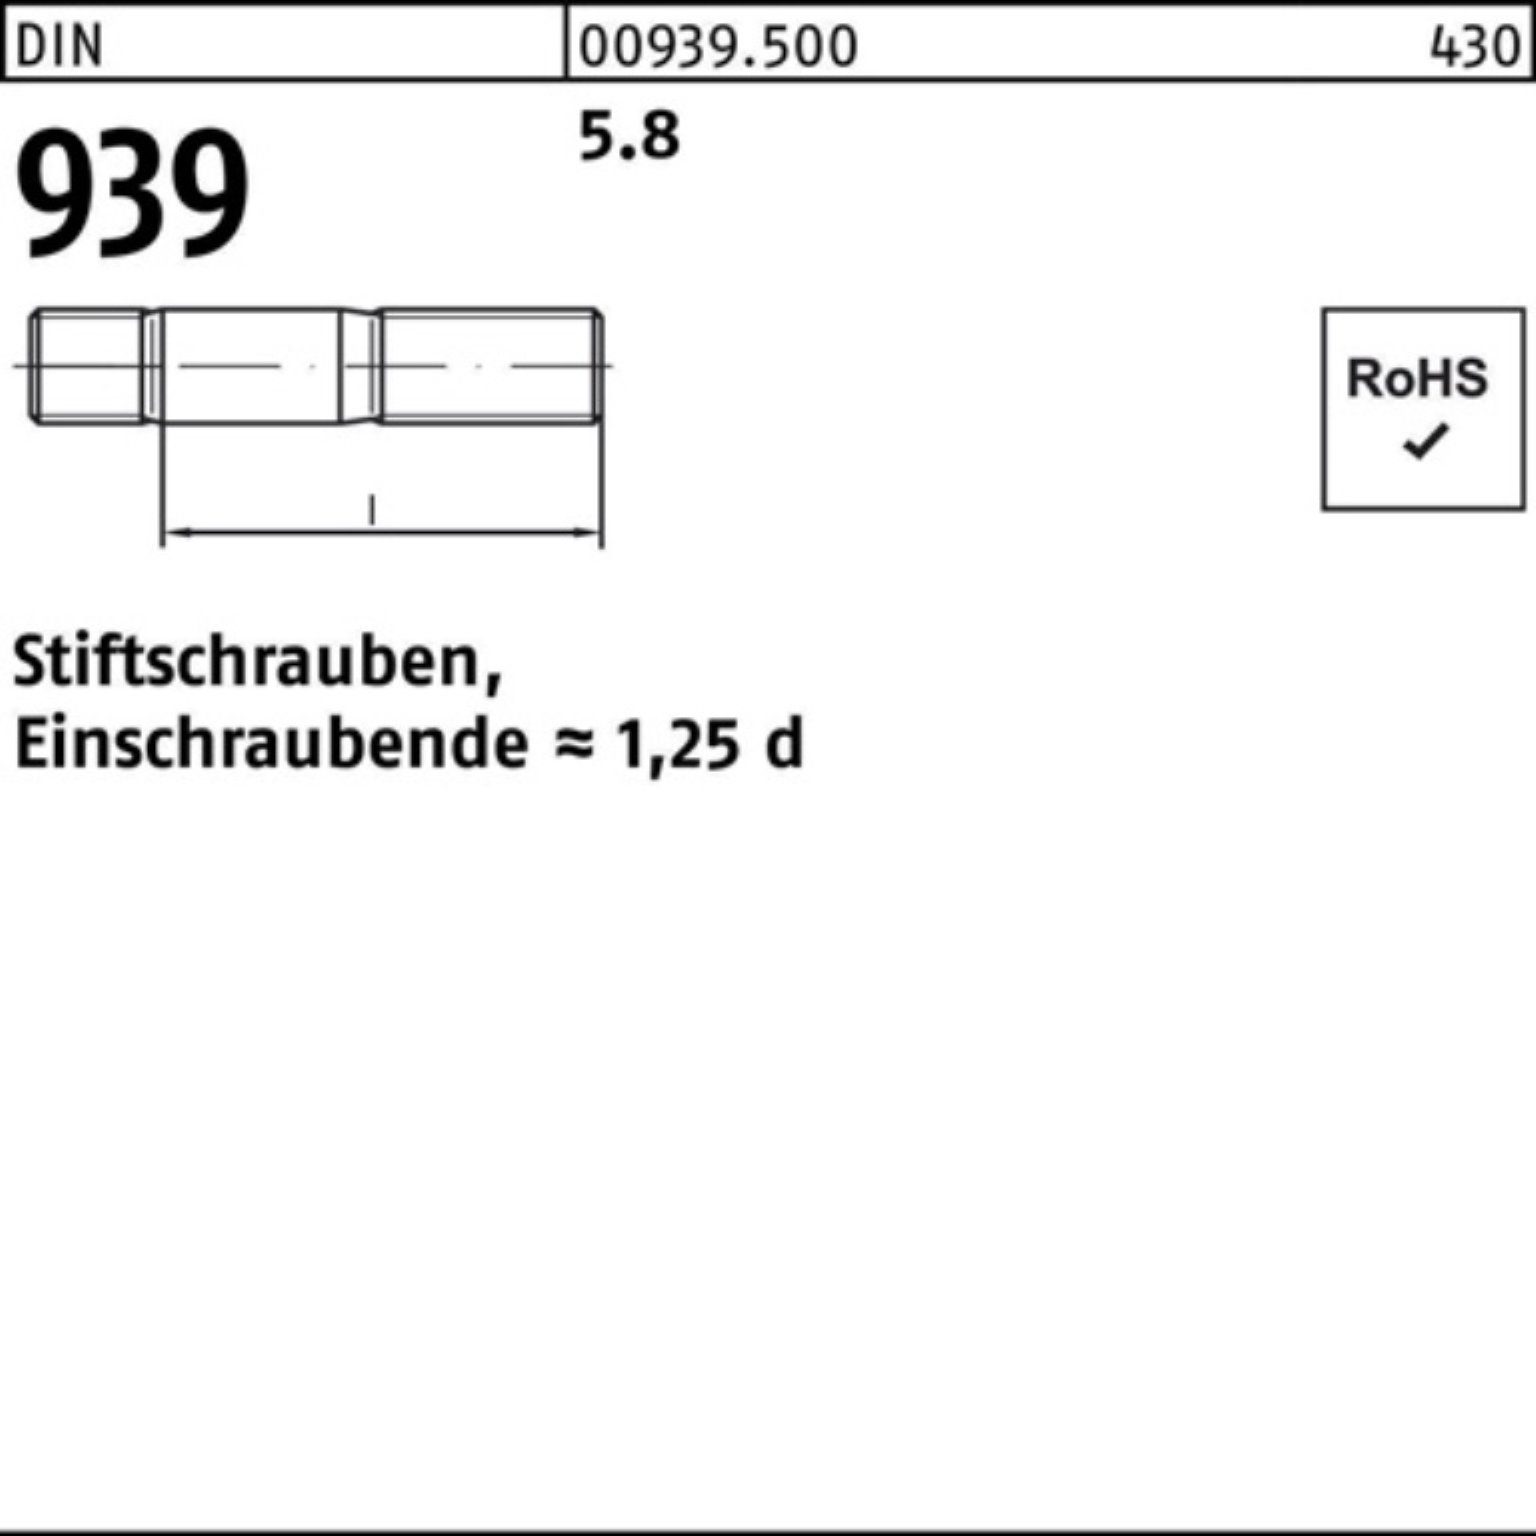 65 S 939 Reyher Pack 10 M24x Einschraubende=1,25d 5.8 100er DIN Stiftschraube Stiftschraube